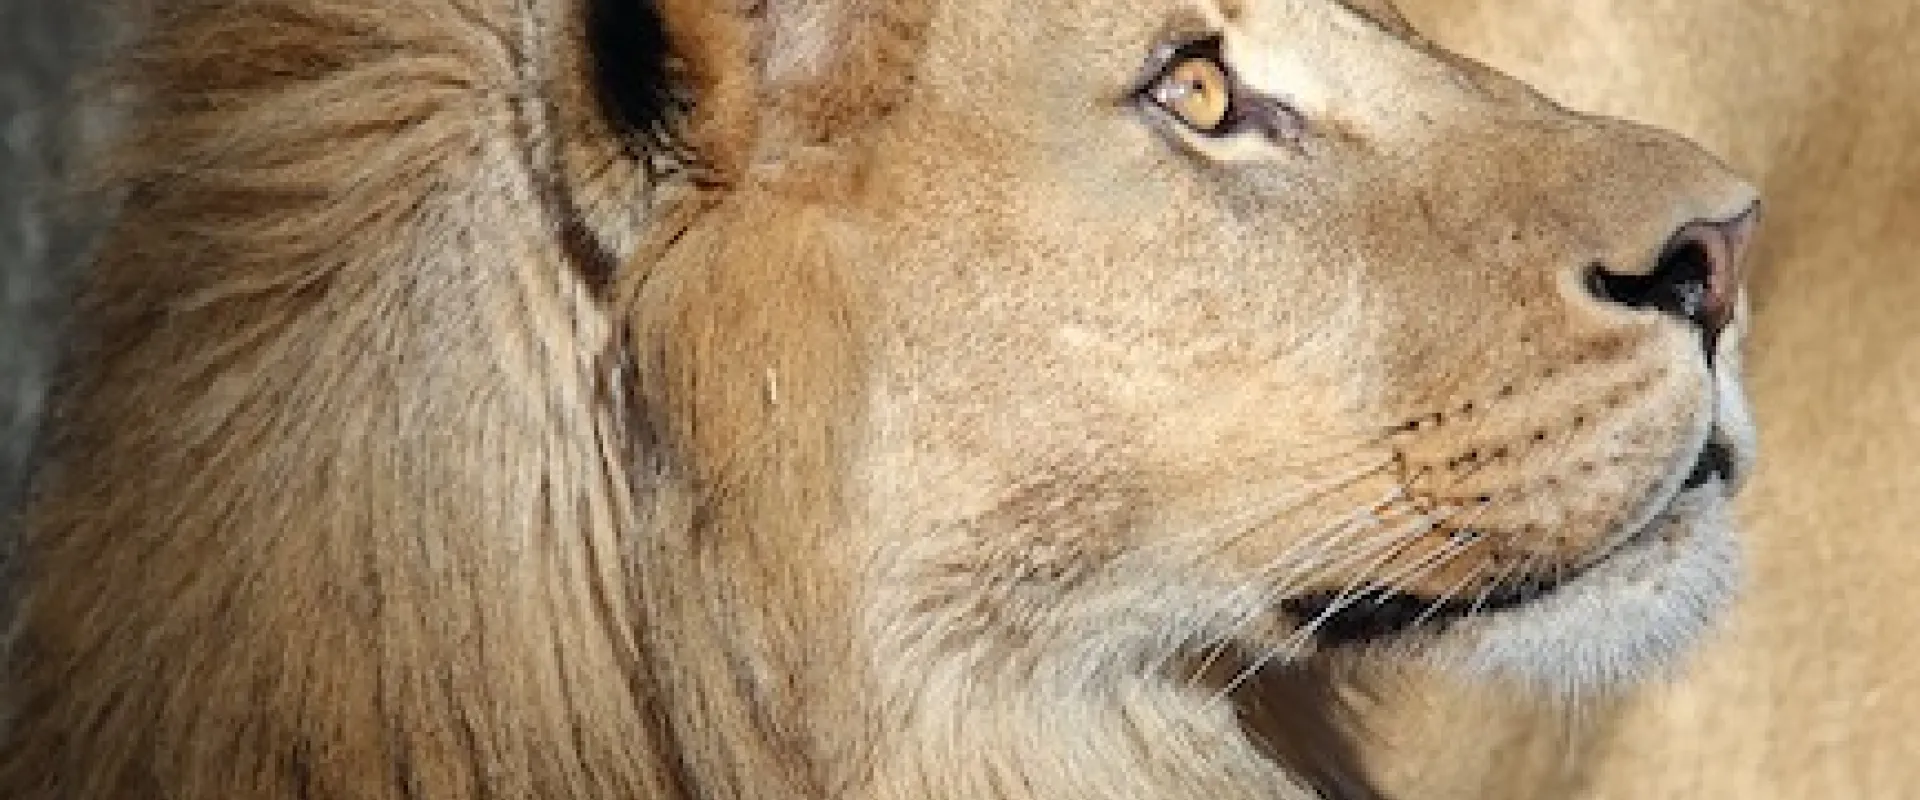 Meet Haji - North Carolina Zoo's New Lion